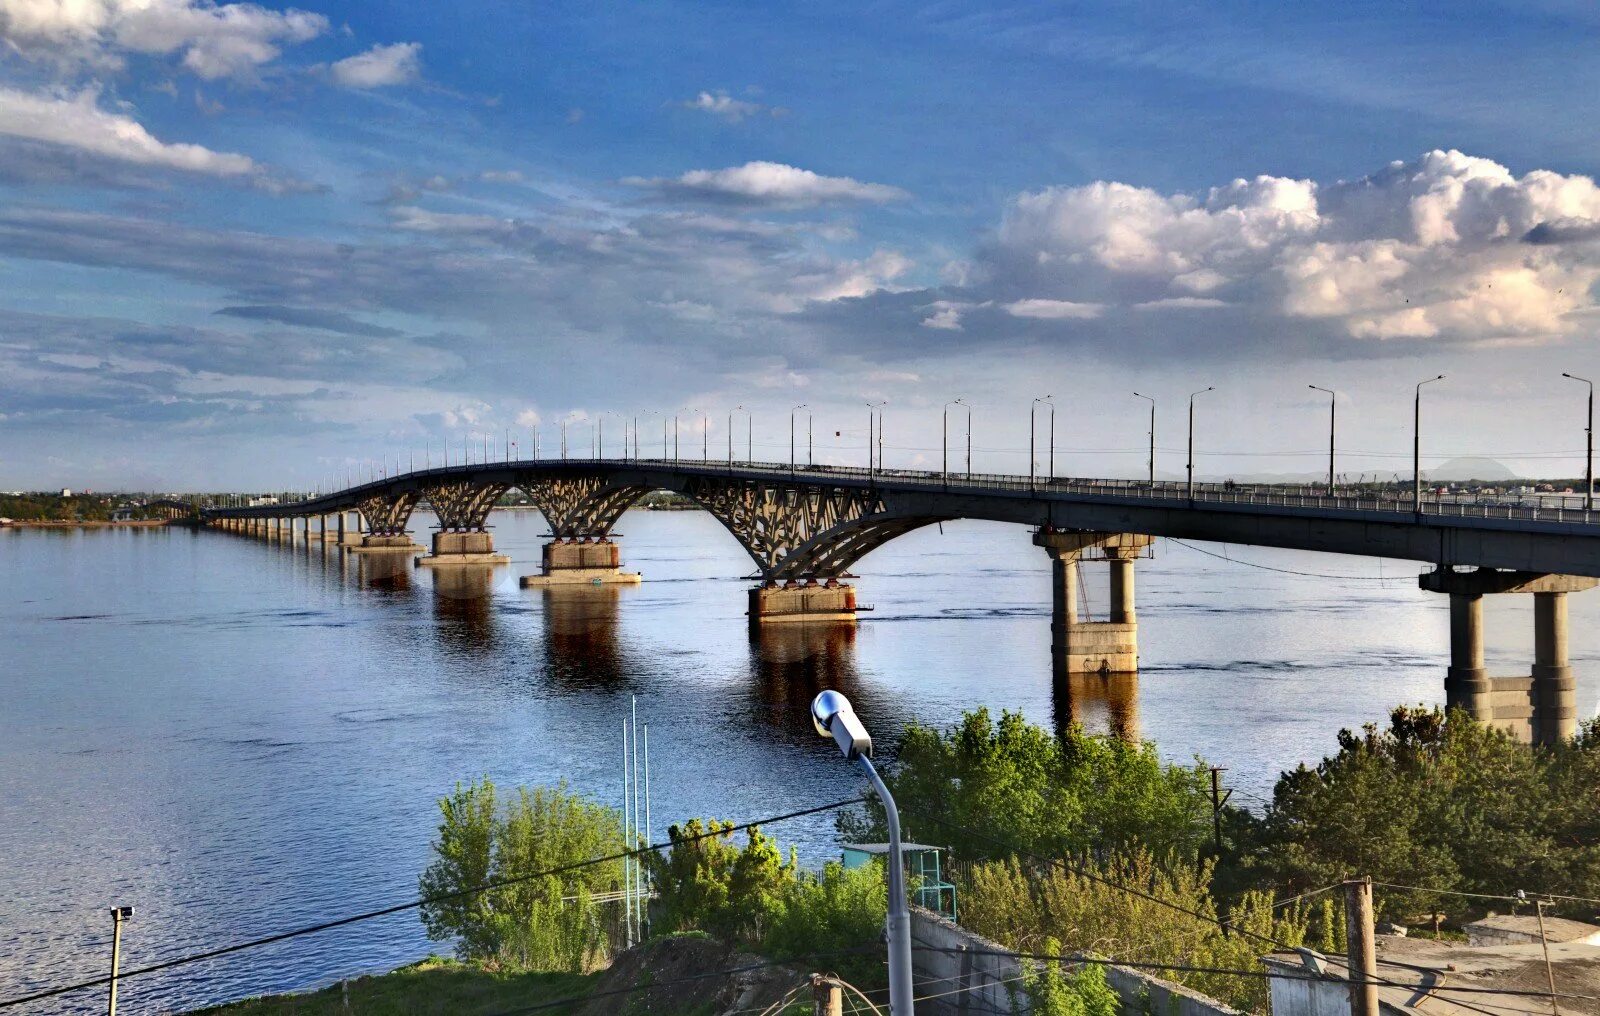 Саратов это город на волге. Саратов- Энгельсский мост через Волгу. Волга мост Саратов Энгельс. Автодорожный мост Саратов. Волга река мост Саратов.